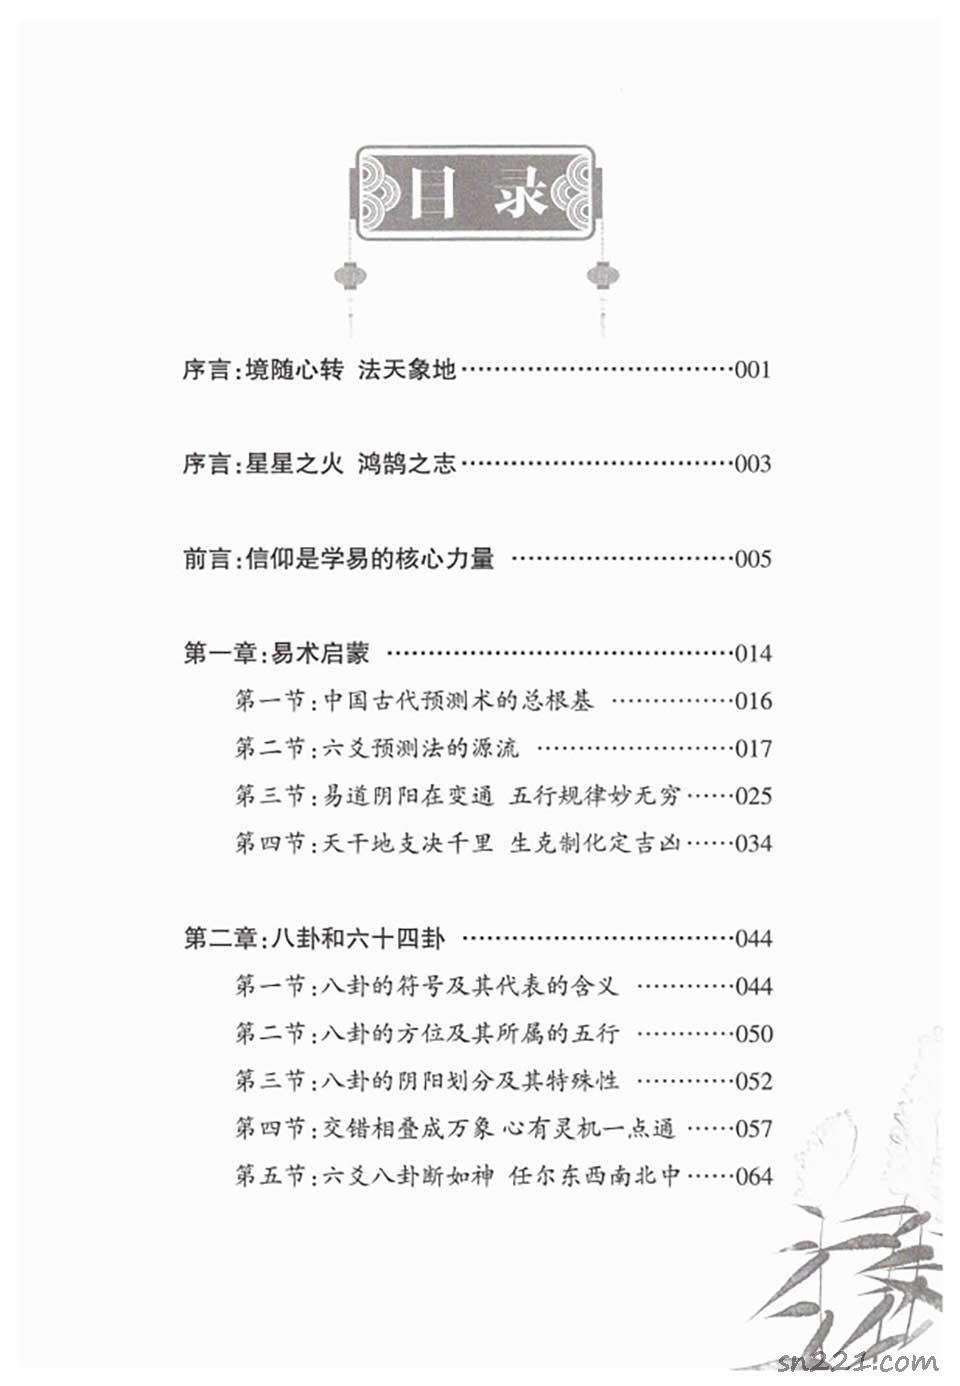 財神老師-楊文財六爻預測學內部培訓教材6部PDF